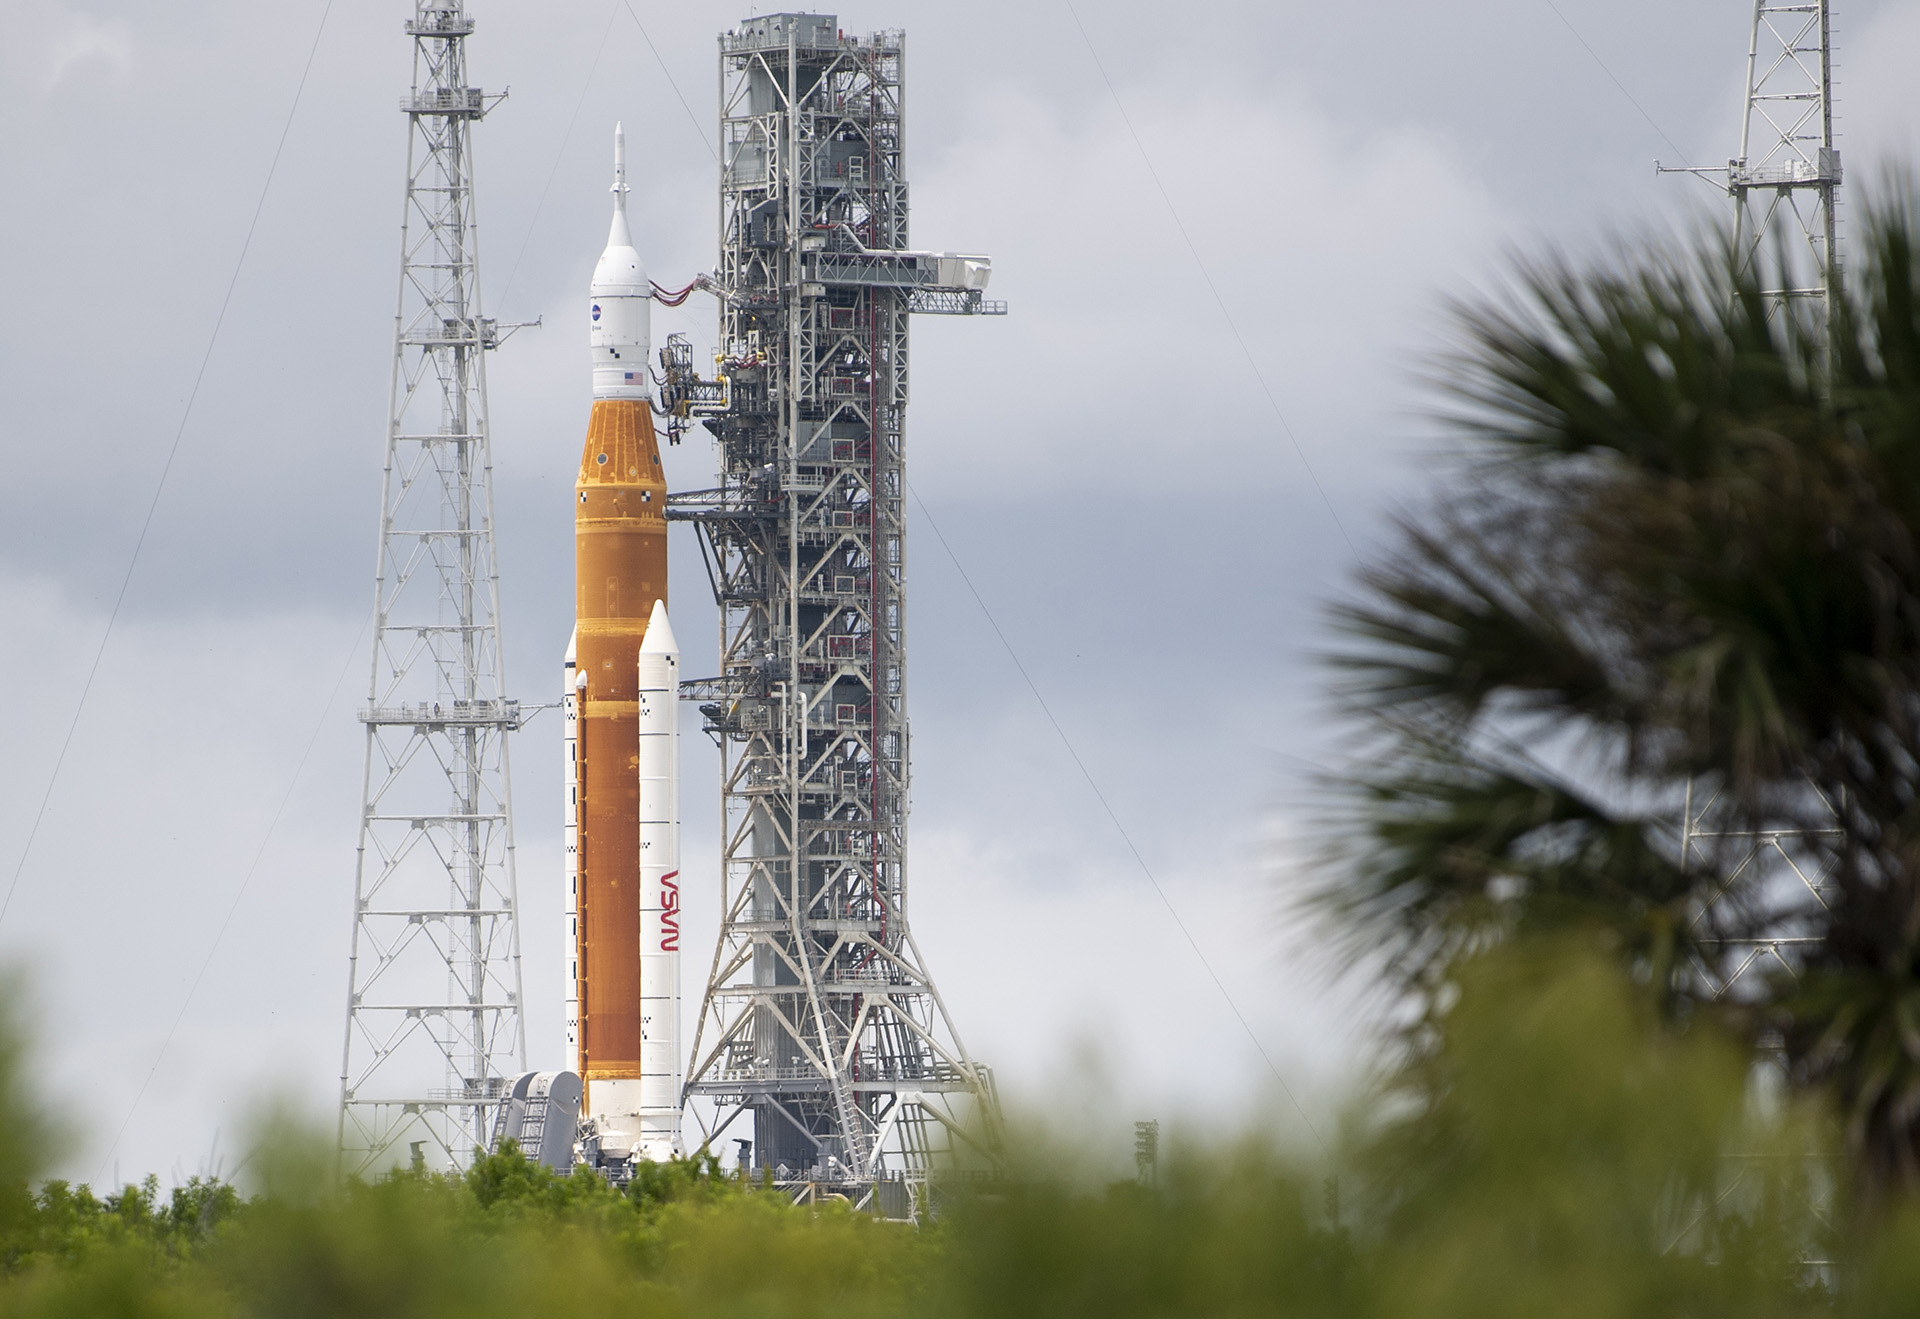 El vuelo de prueba se realizará con cohete de 98 metros con una cápsula llamada Orión, que se encuentra en la parte superior con el objetivo de garantizar que se pueda transportar astronautas de manera segura en el futuro